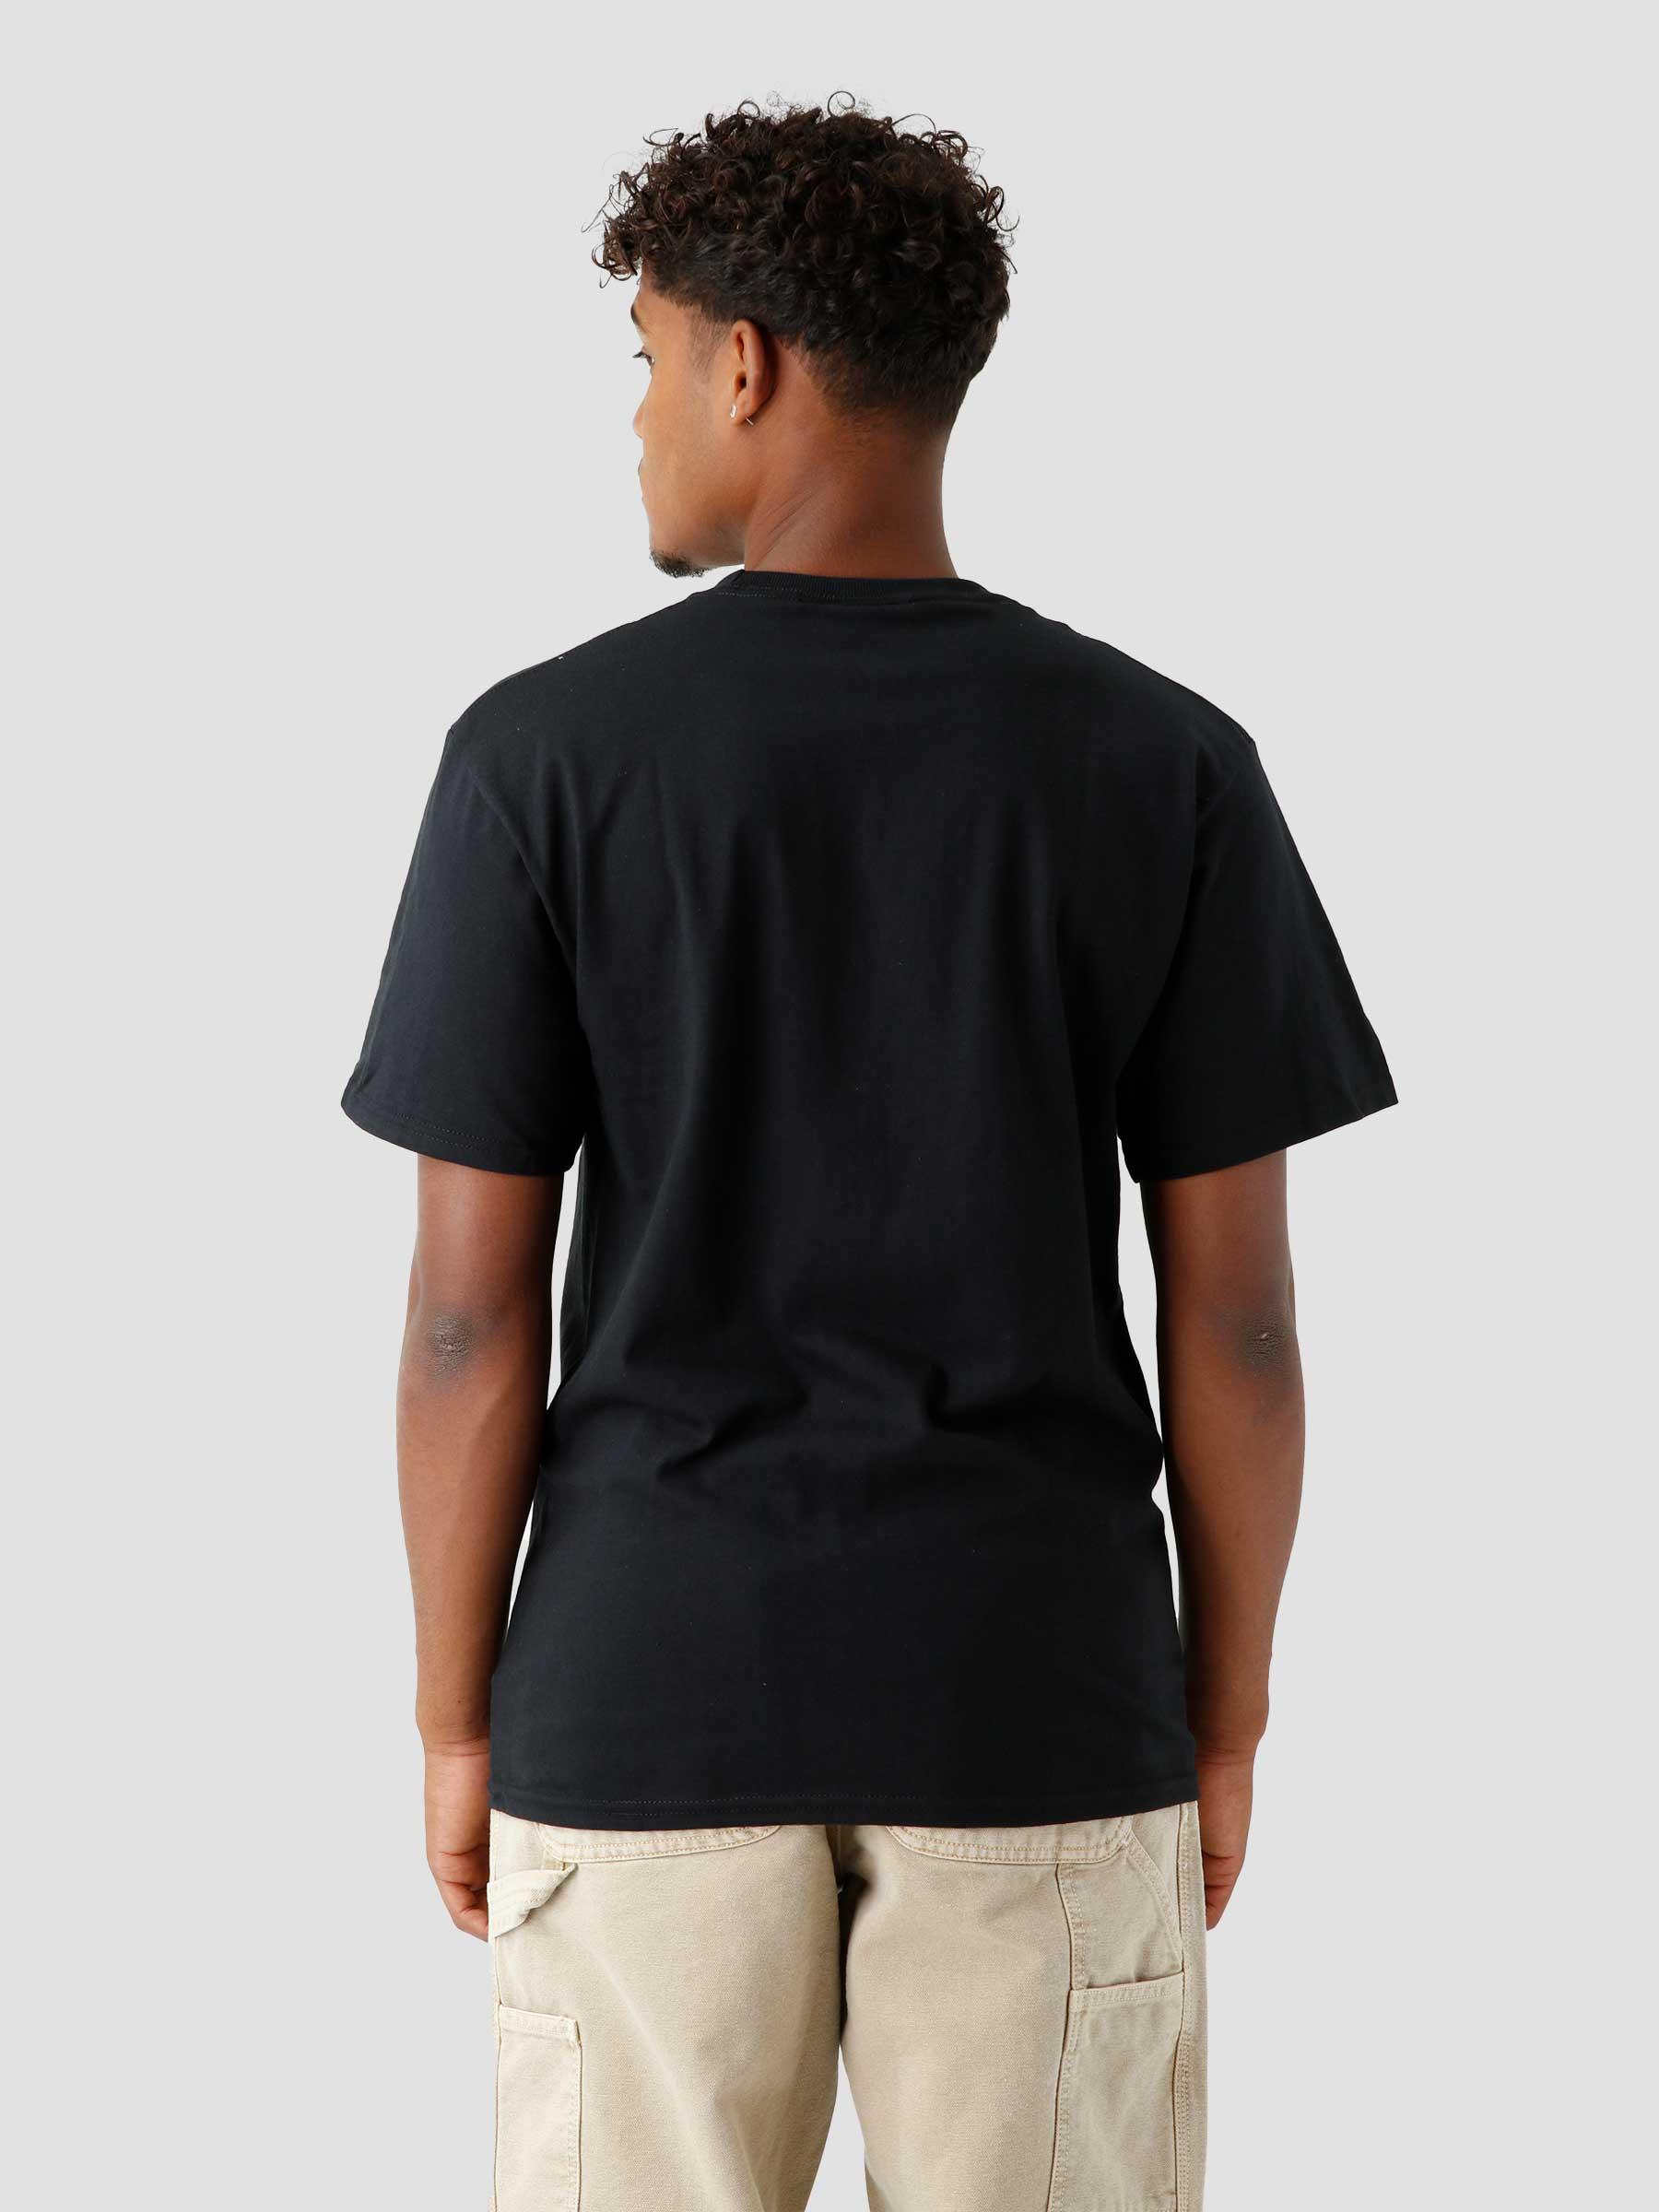 Dirty Water Dog SS T-shirt Black TS01732-BLACK